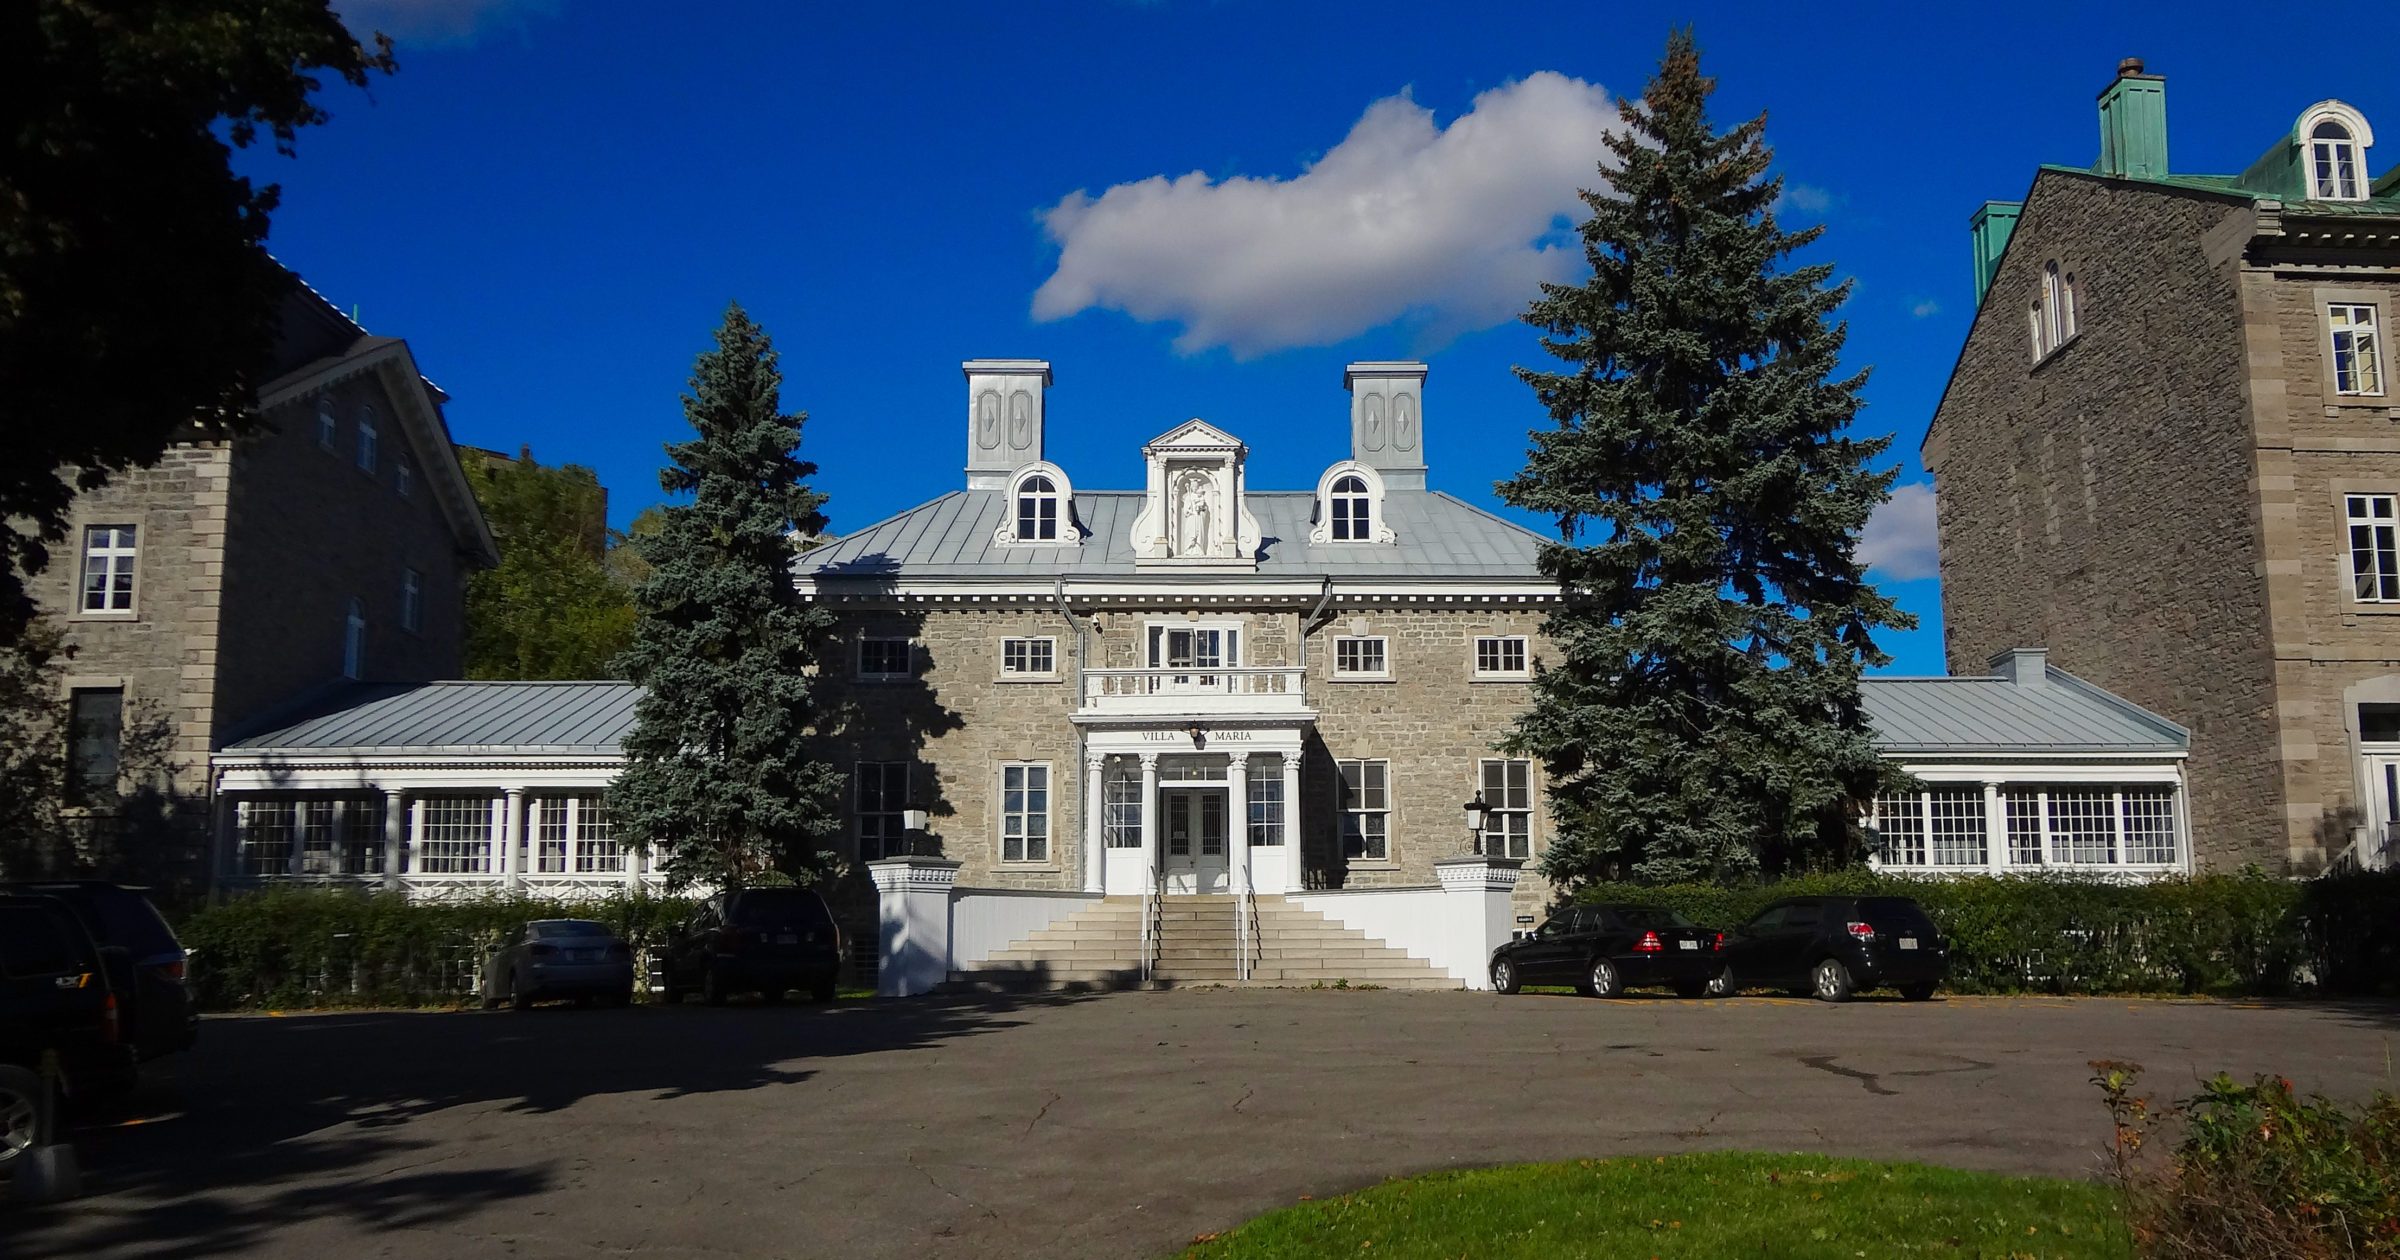 Monklands / Villa Maria Convent - National Historic Site of Canada